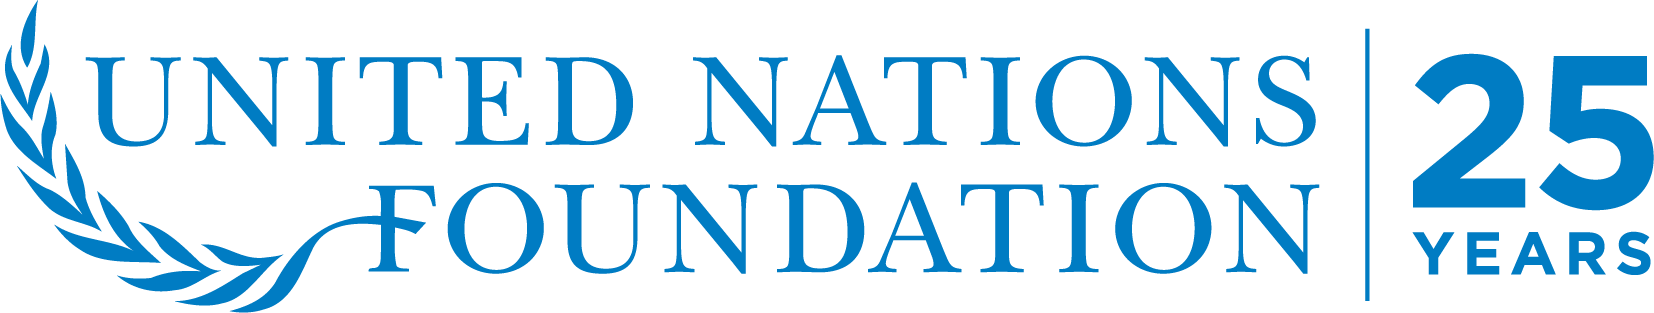 UN Foundation 25th Anniversary Logo